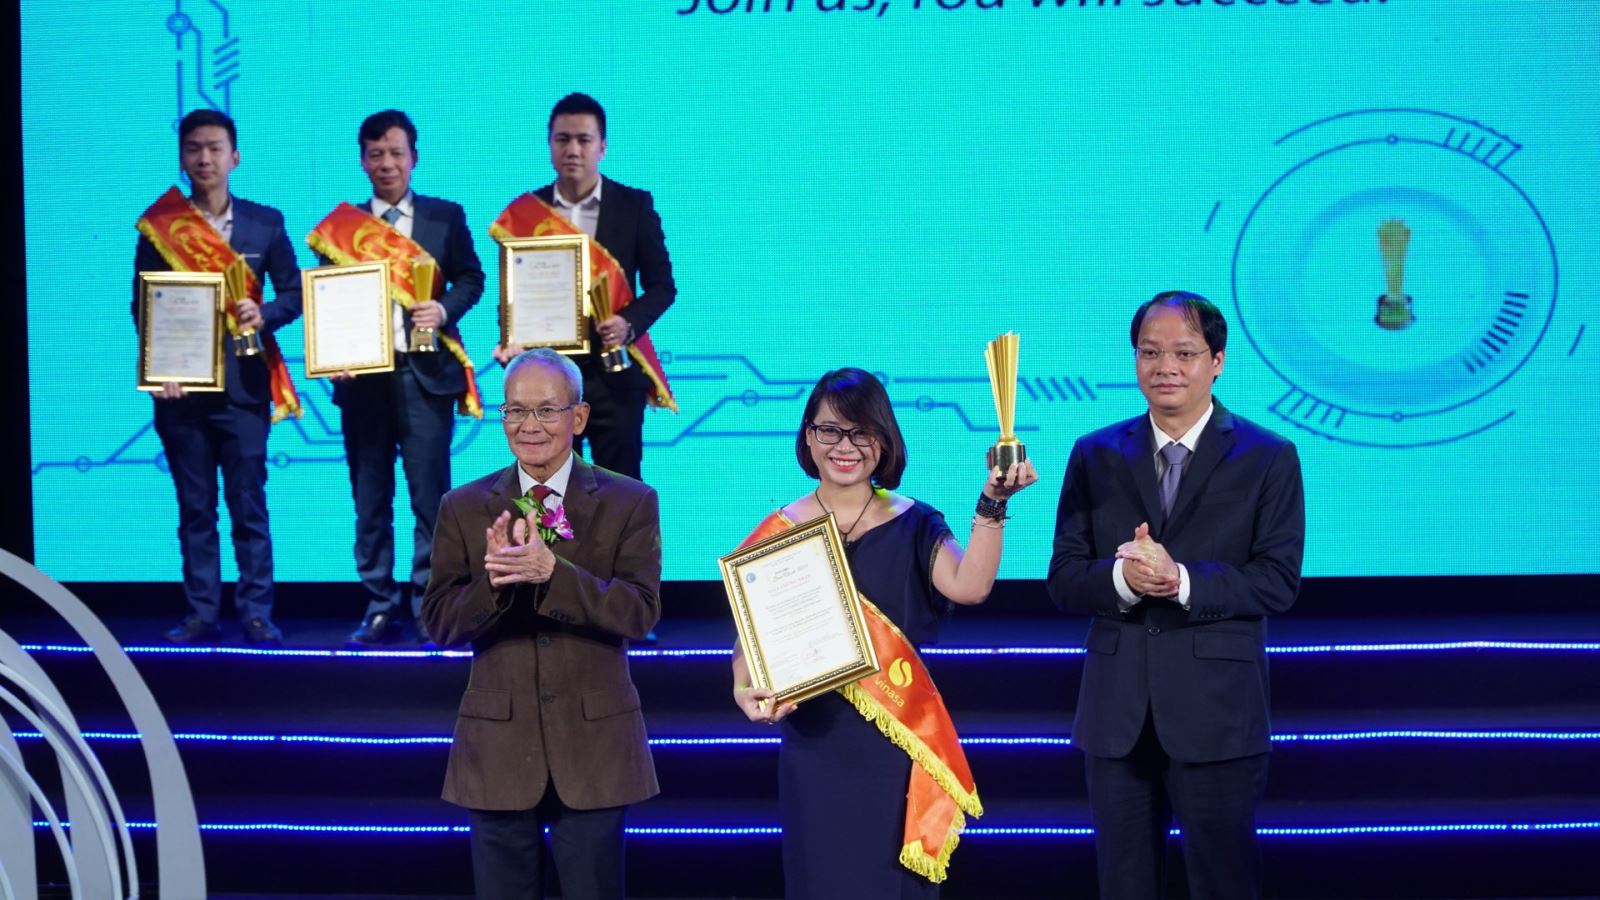 Chị Lê Bích Ngọc đại diện Team Truyền thông thương hiệu tuyển dụng nhận giải Sao Khuê hạng mục Ứng dụng công nghệ vào Tuyển dụng